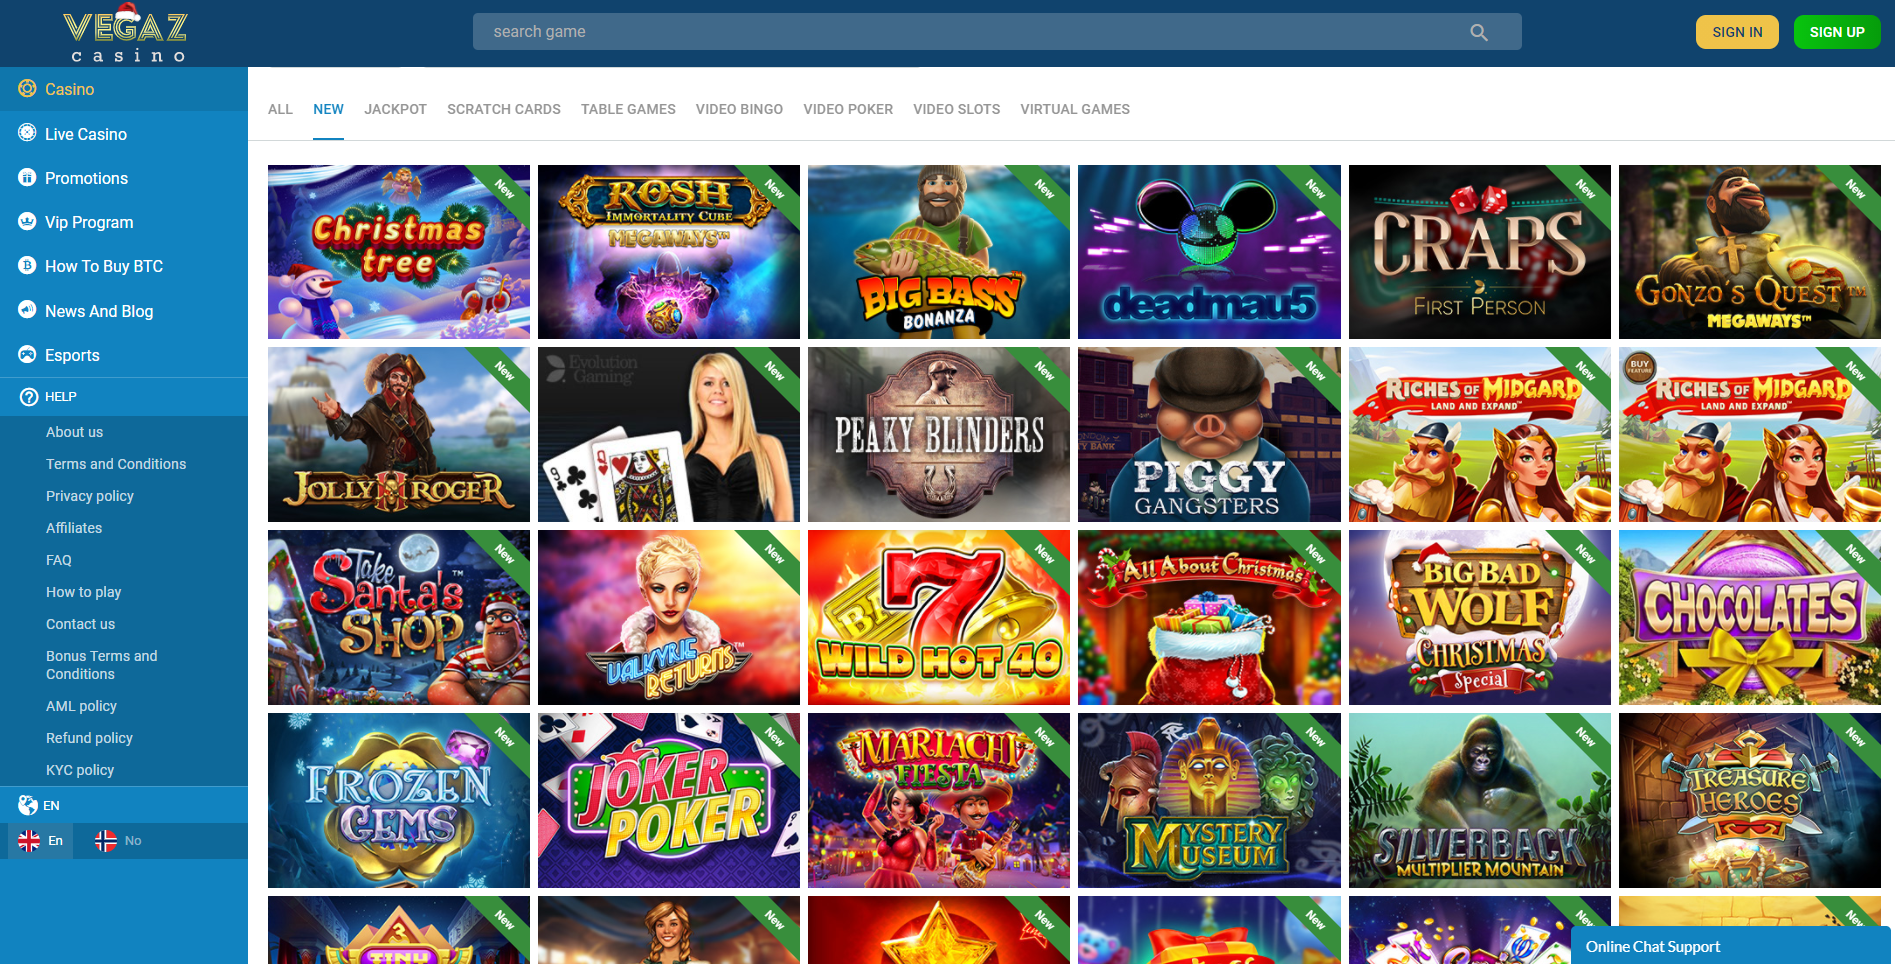 vegaz casino online i Litauen registrering för nya kunder och spel 